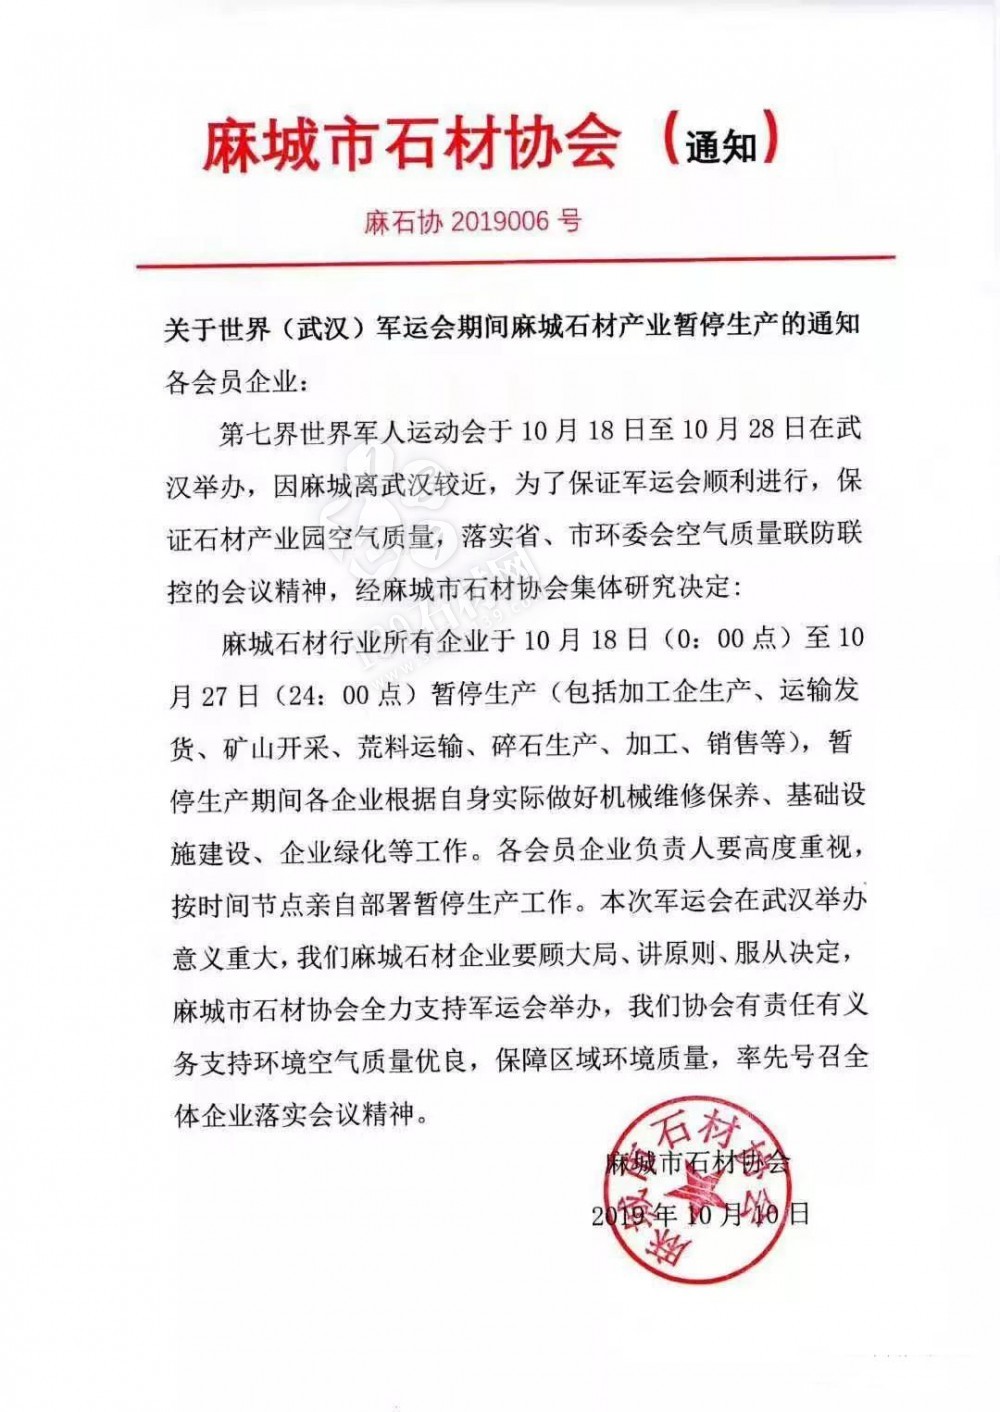 关于世界（武汉）军运会期间麻城石材产业暂停生产的通知